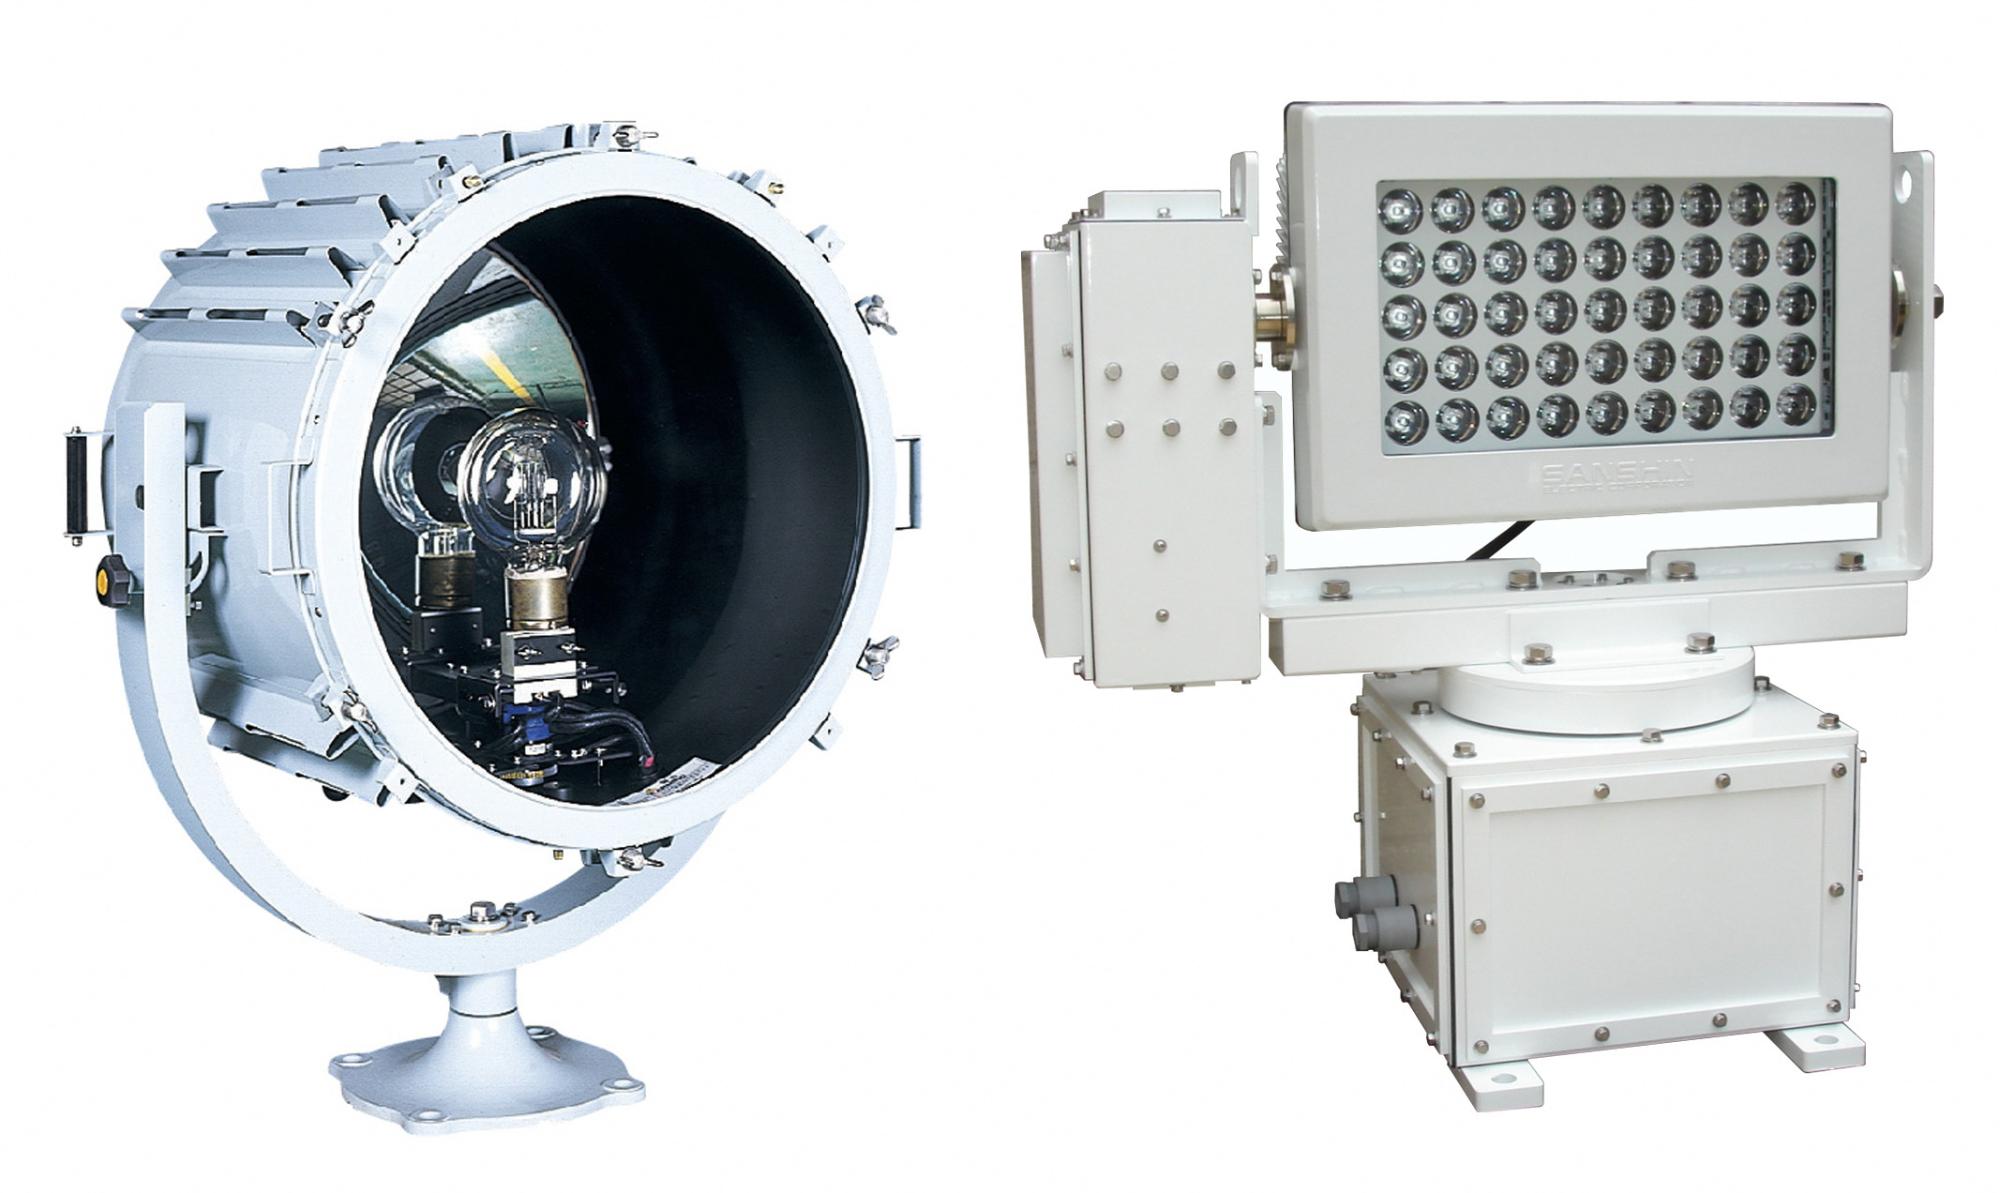 三信船舶電具 株式会社の取り扱い製品である照明機器